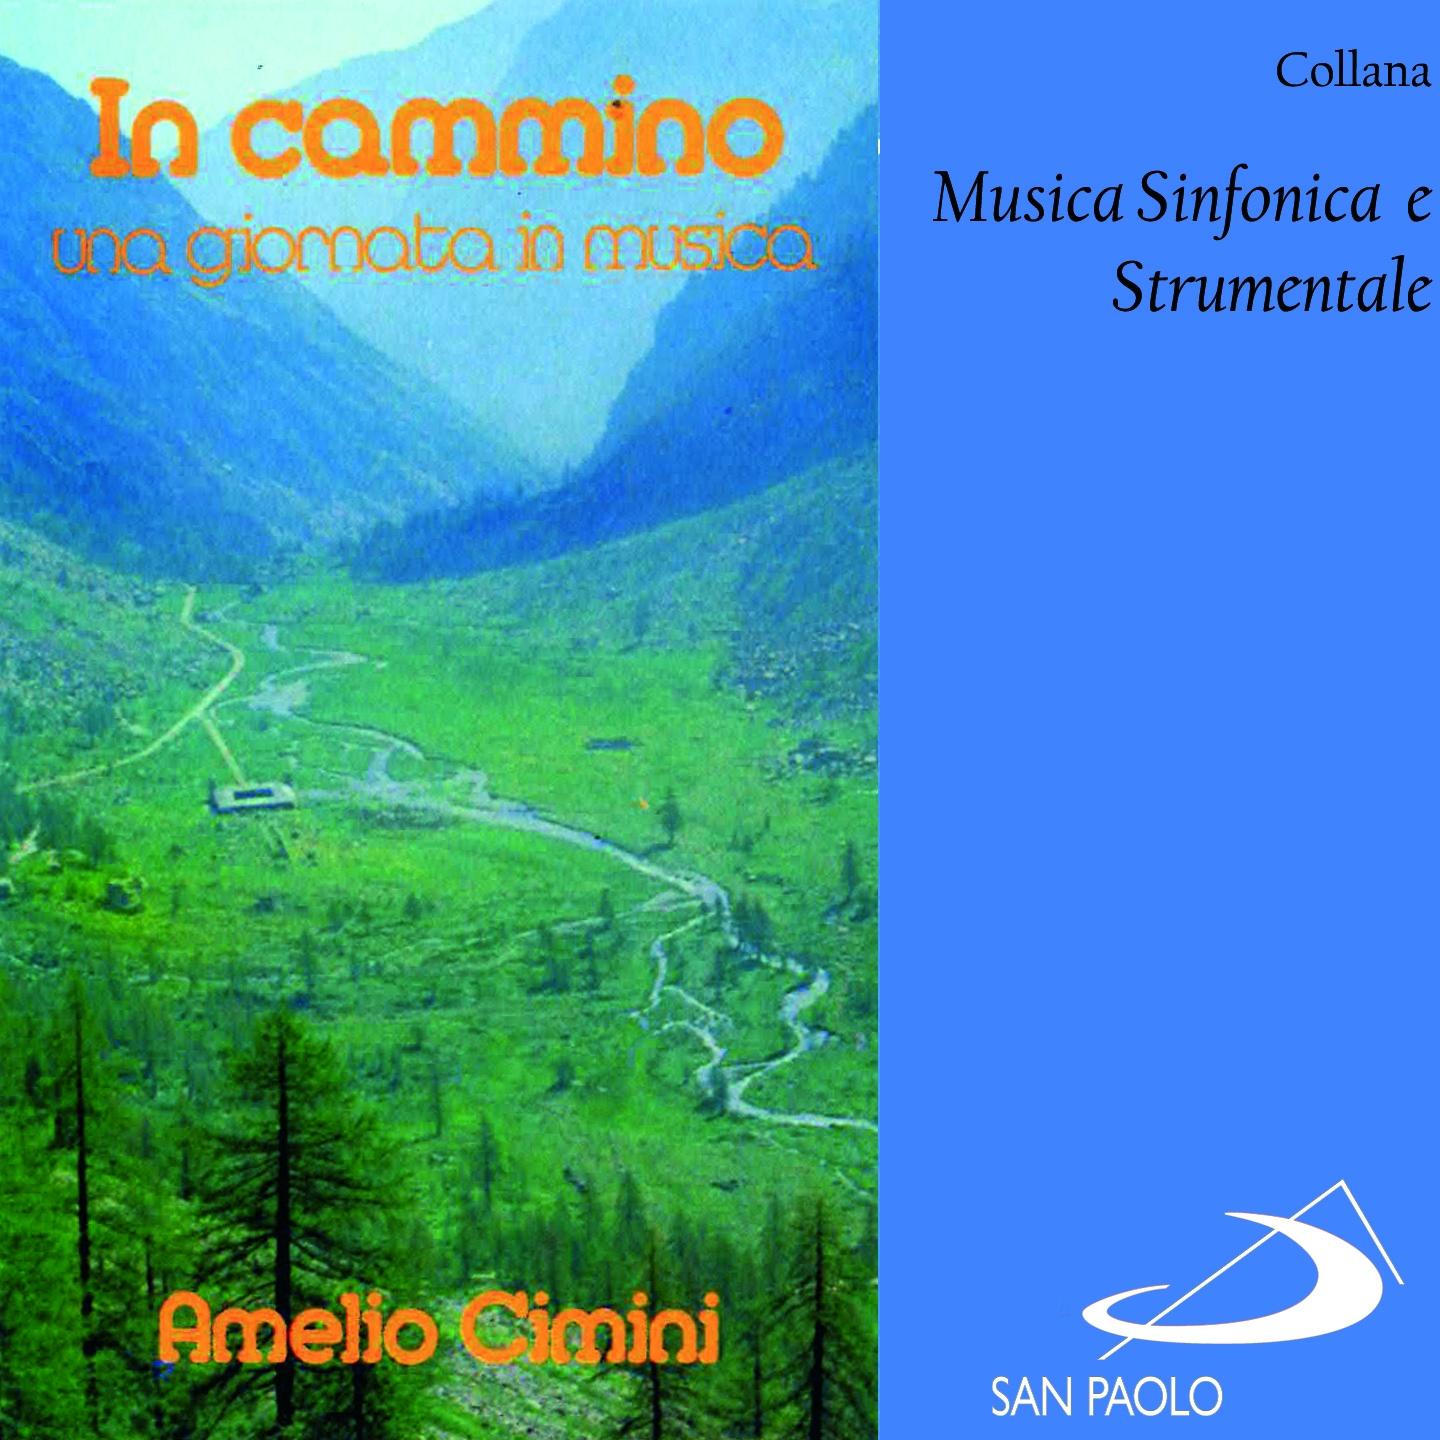 Постер альбома Collana musica sinfonica e strumentale: In cammino / Una giornata in musica